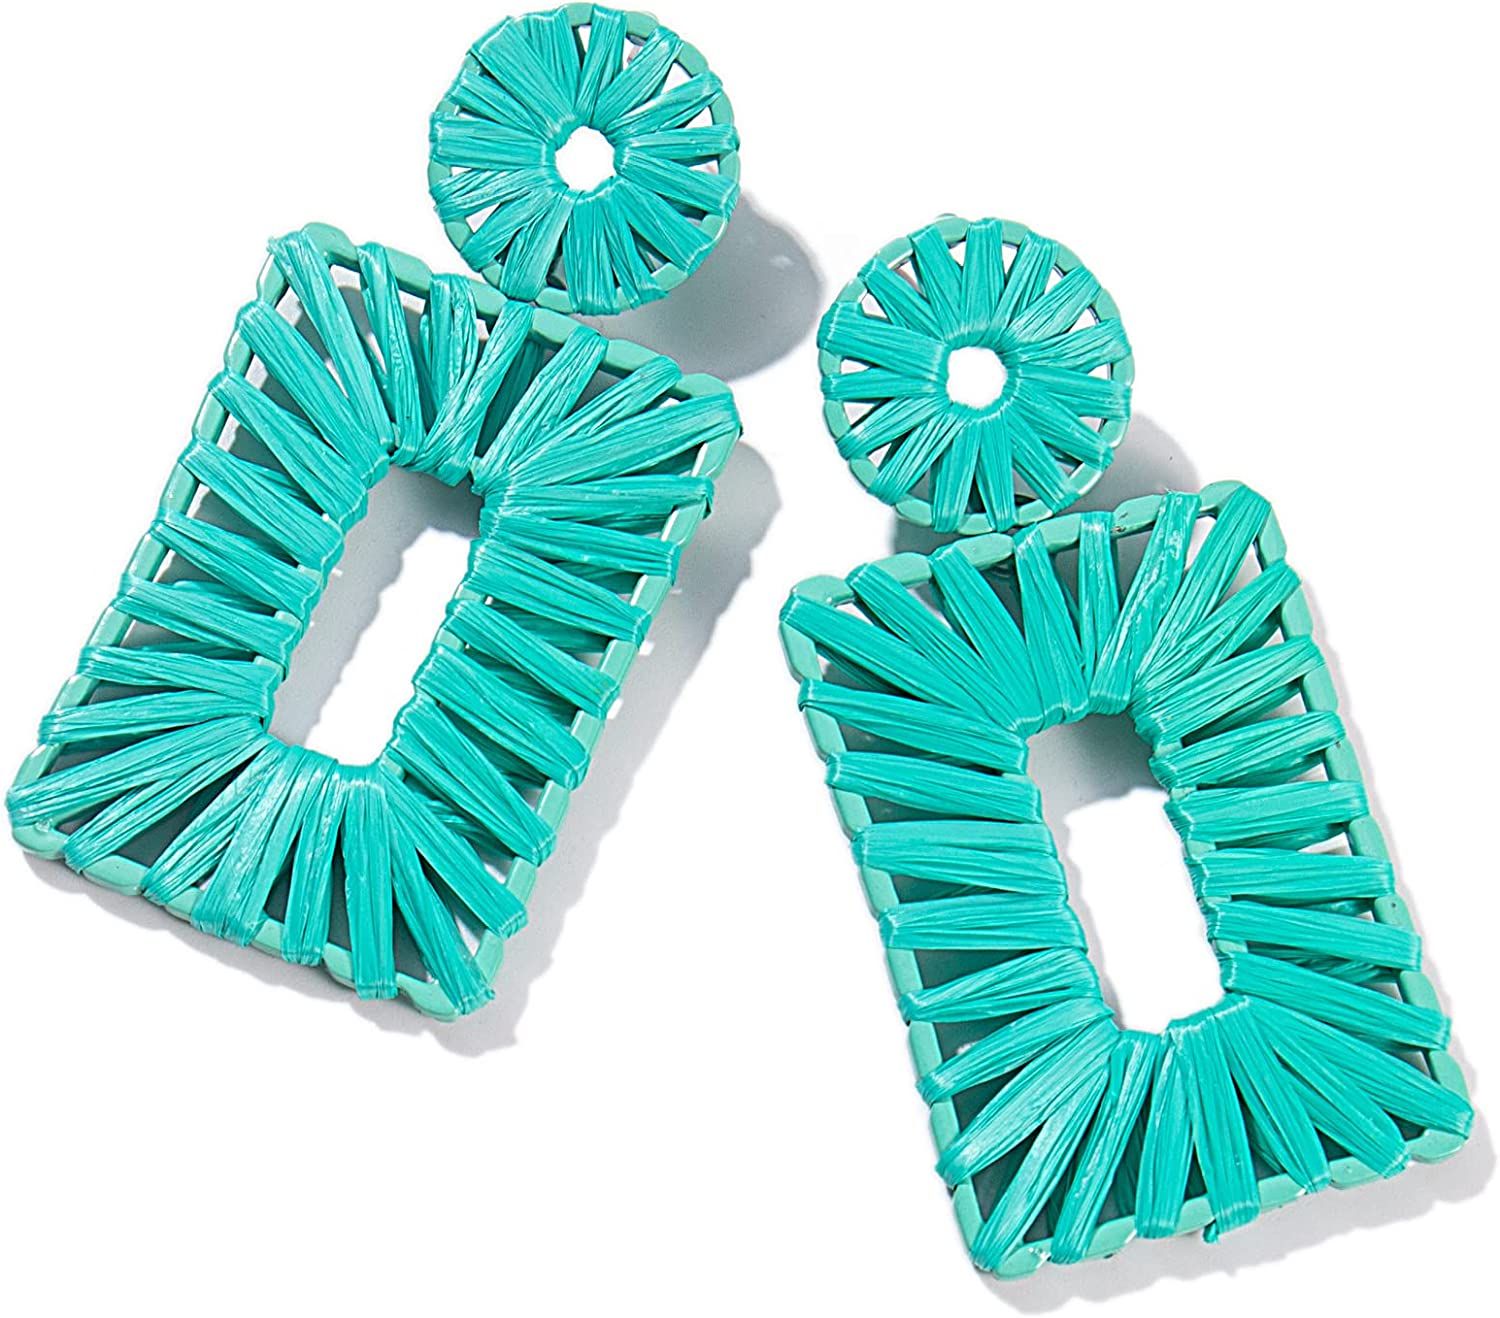 Statement Raffia Earrings Boho Drop Earrings Geometric Dangle Earrings for Women Handmade Straw E... | Amazon (US)